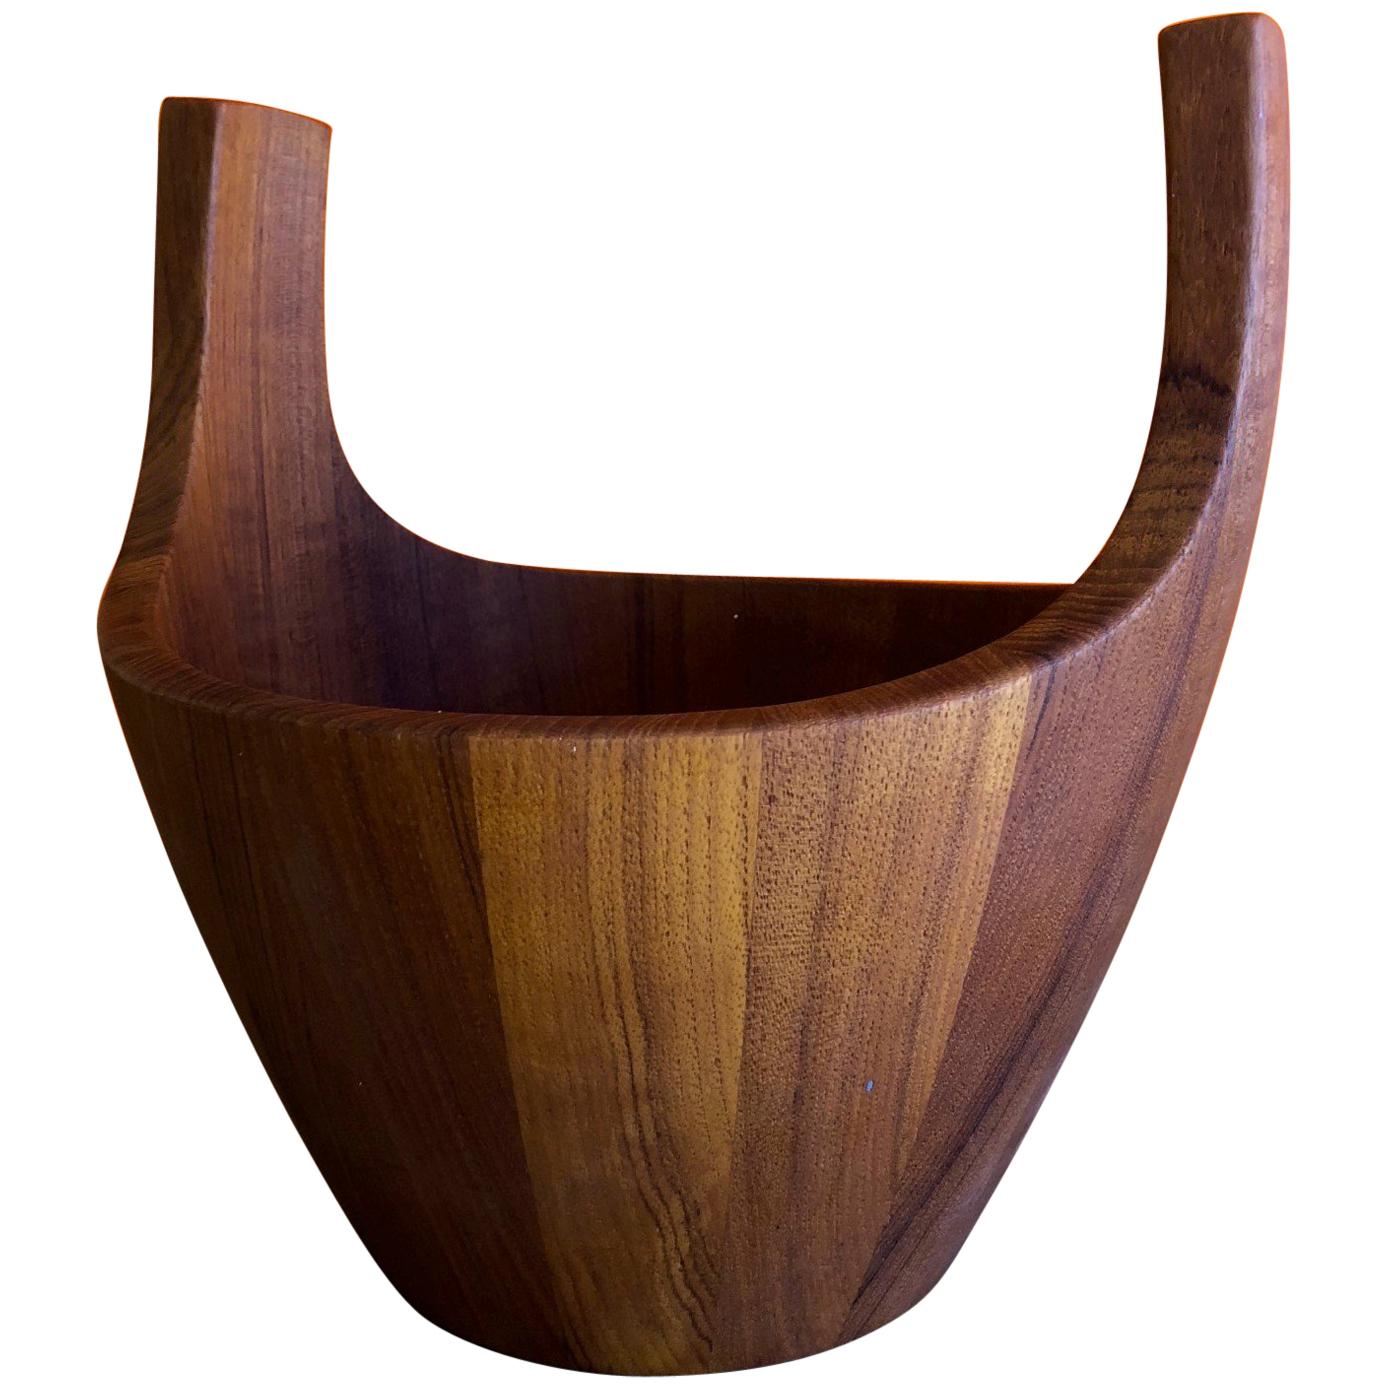 Staved Teak "Viking Bowl" by Jens Quistgaard for Dansk